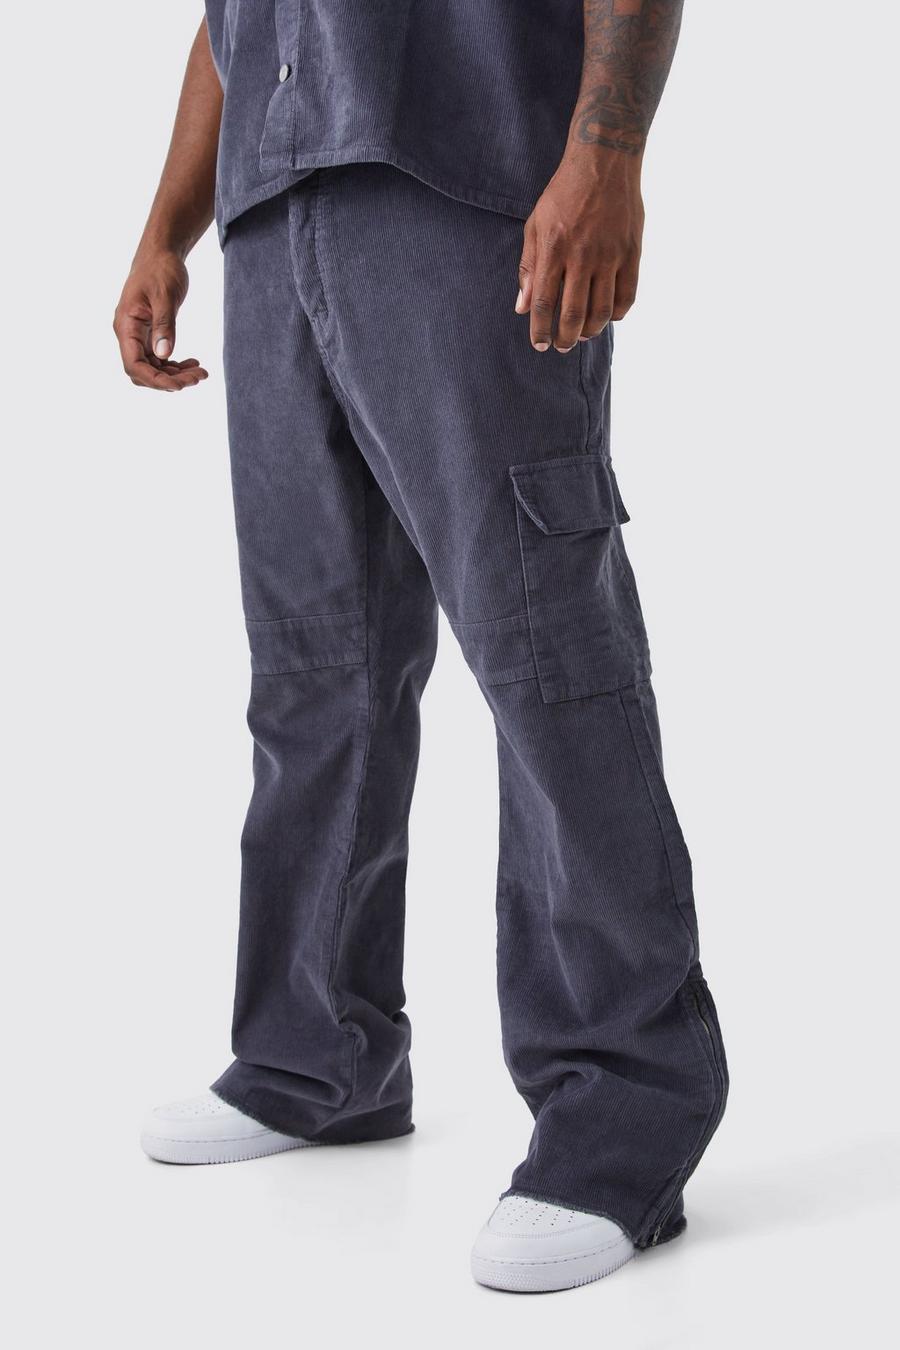 Pantalón Plus cargo ajustado de campana con cremallera, refuerzo de pana y cintura fija, Charcoal image number 1